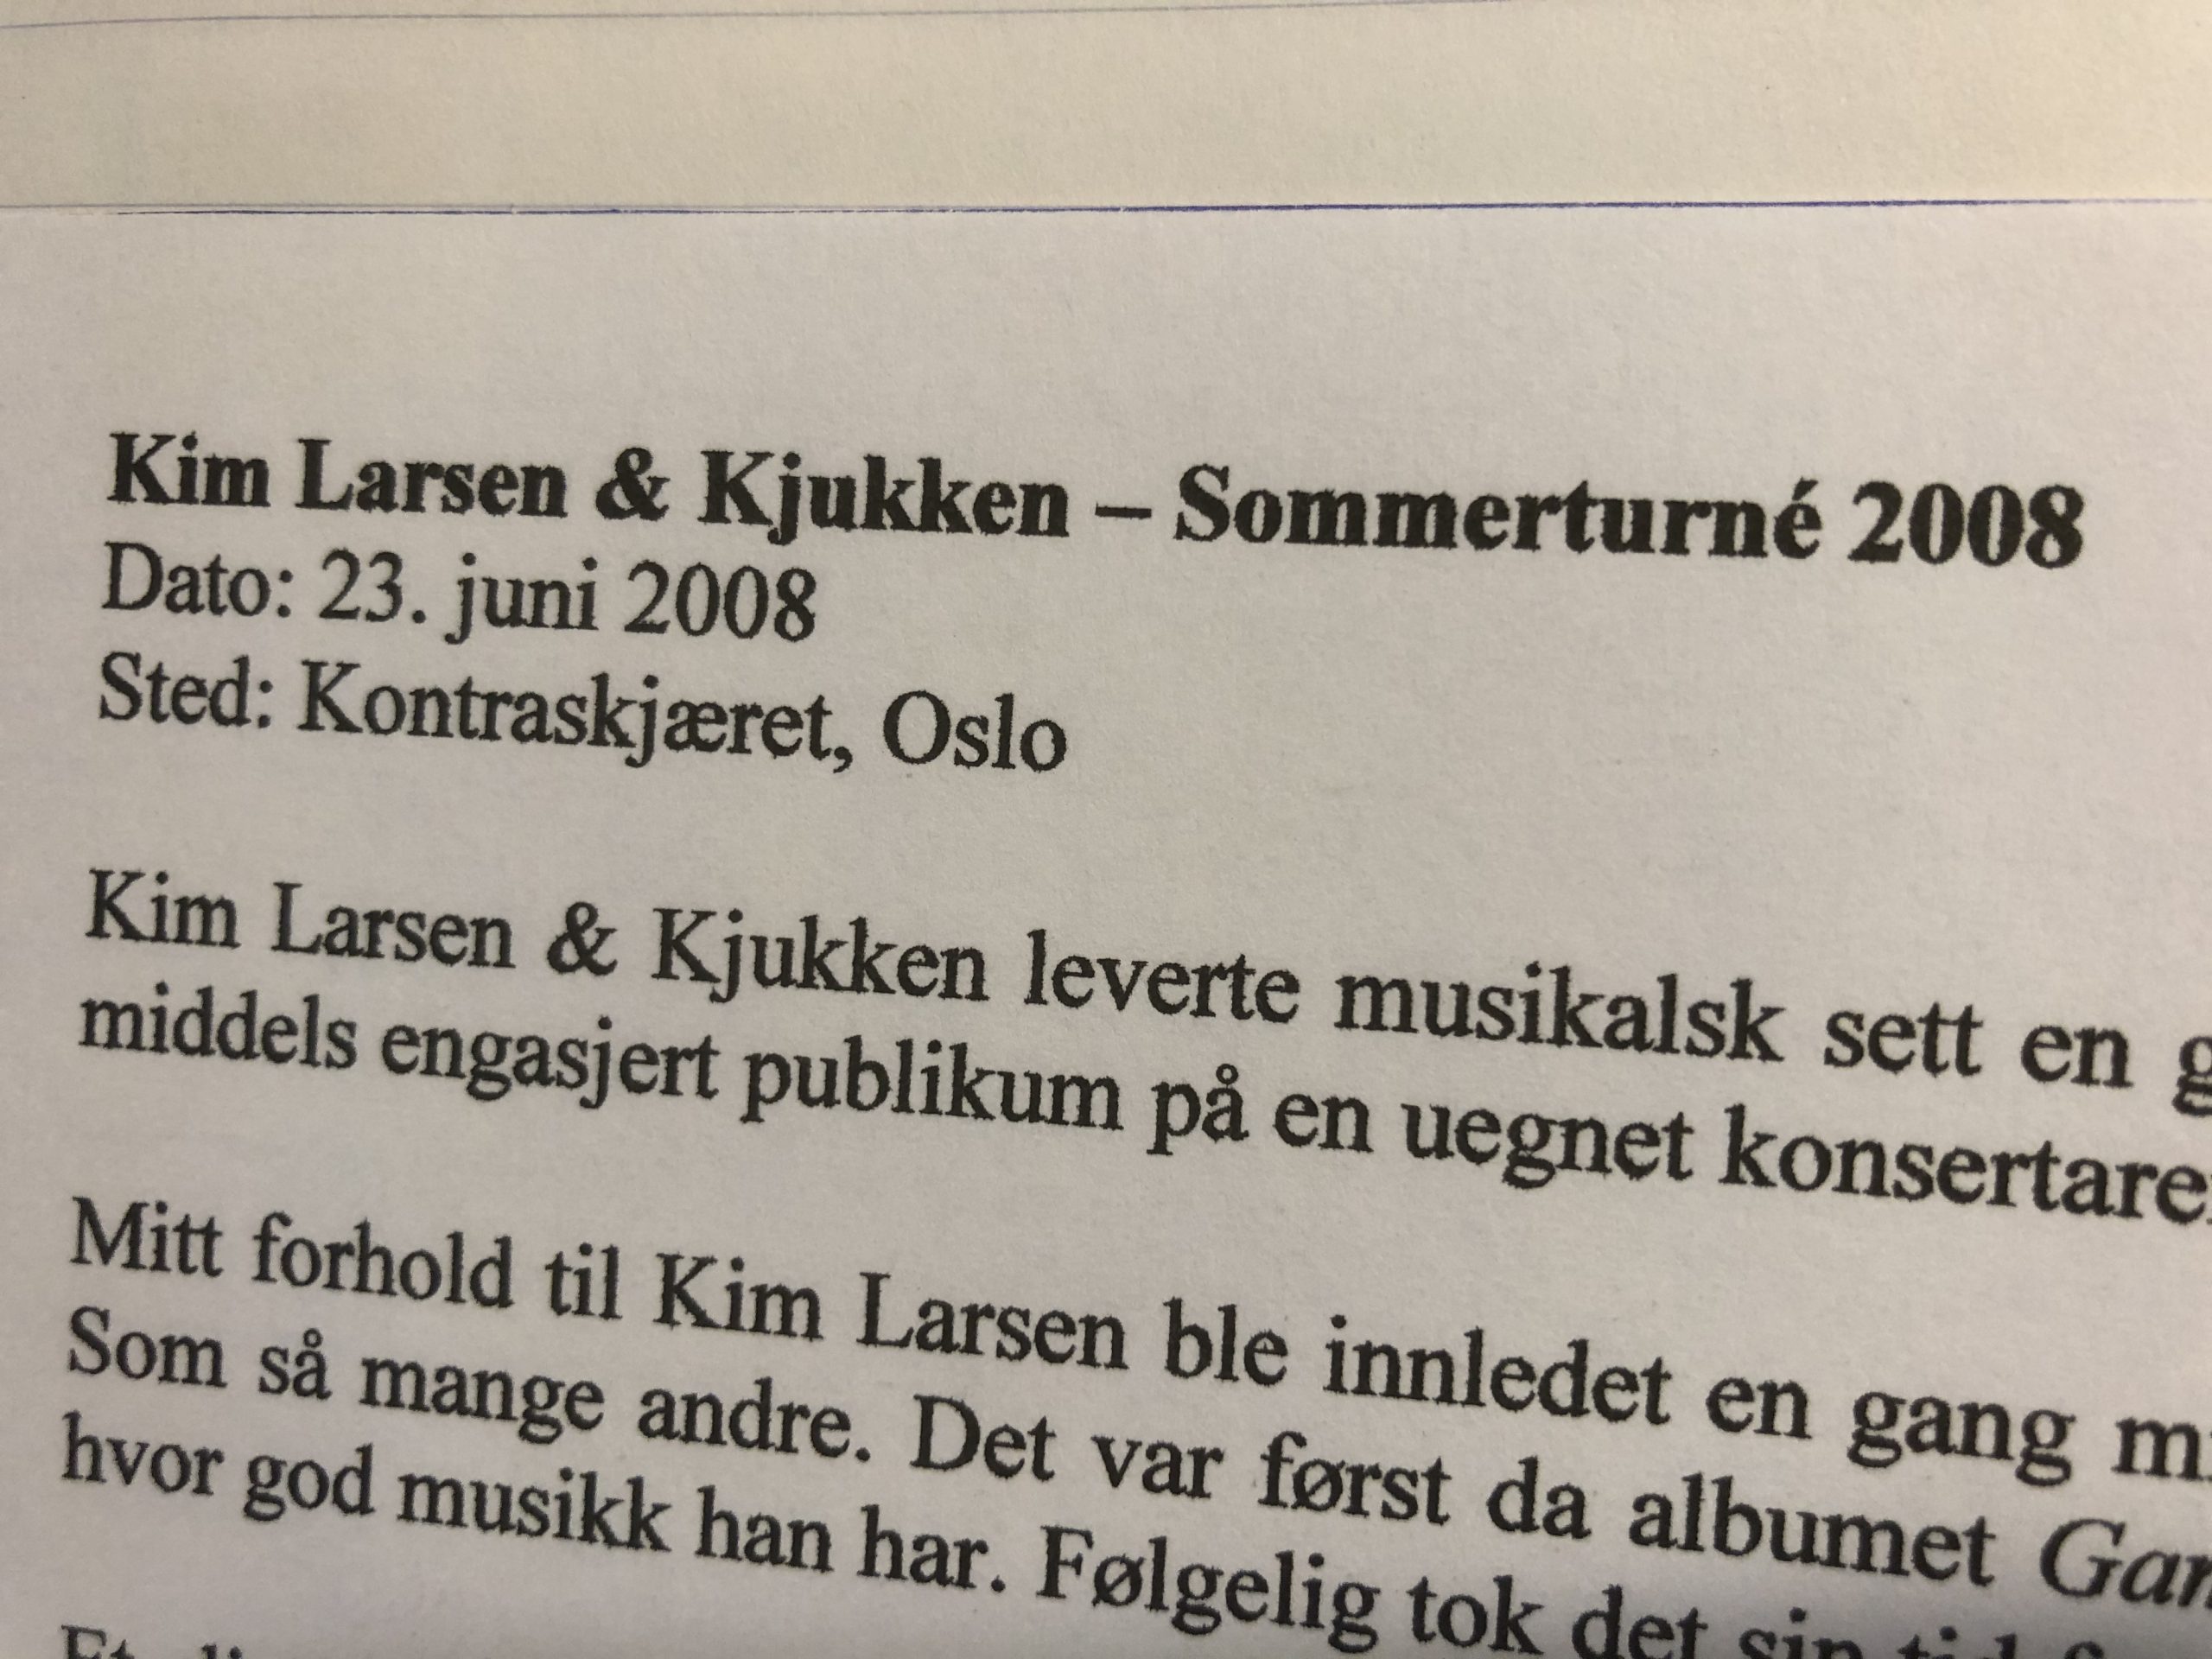 flamme jeg er sulten gøre ondt Kim Larsen & Kjukken – Sommerturné 2008, Kontraskjæret, Oslo | Martins  musikkblogg